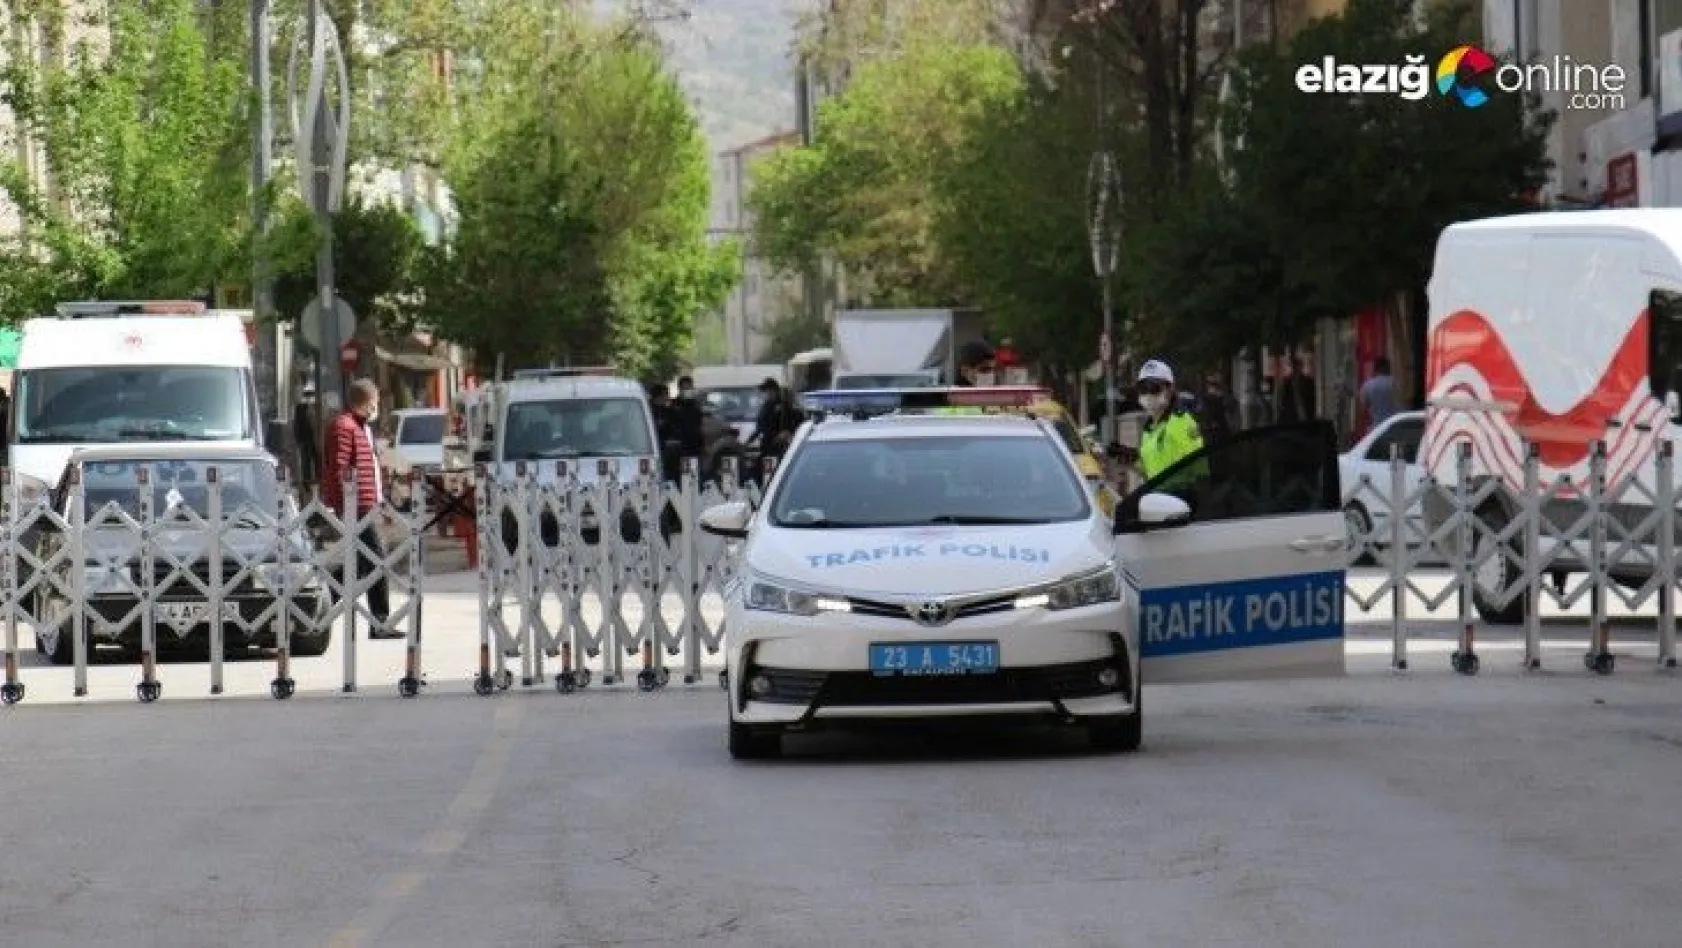 Elazığ'da 3 cadde araç trafiğine kapatıldı